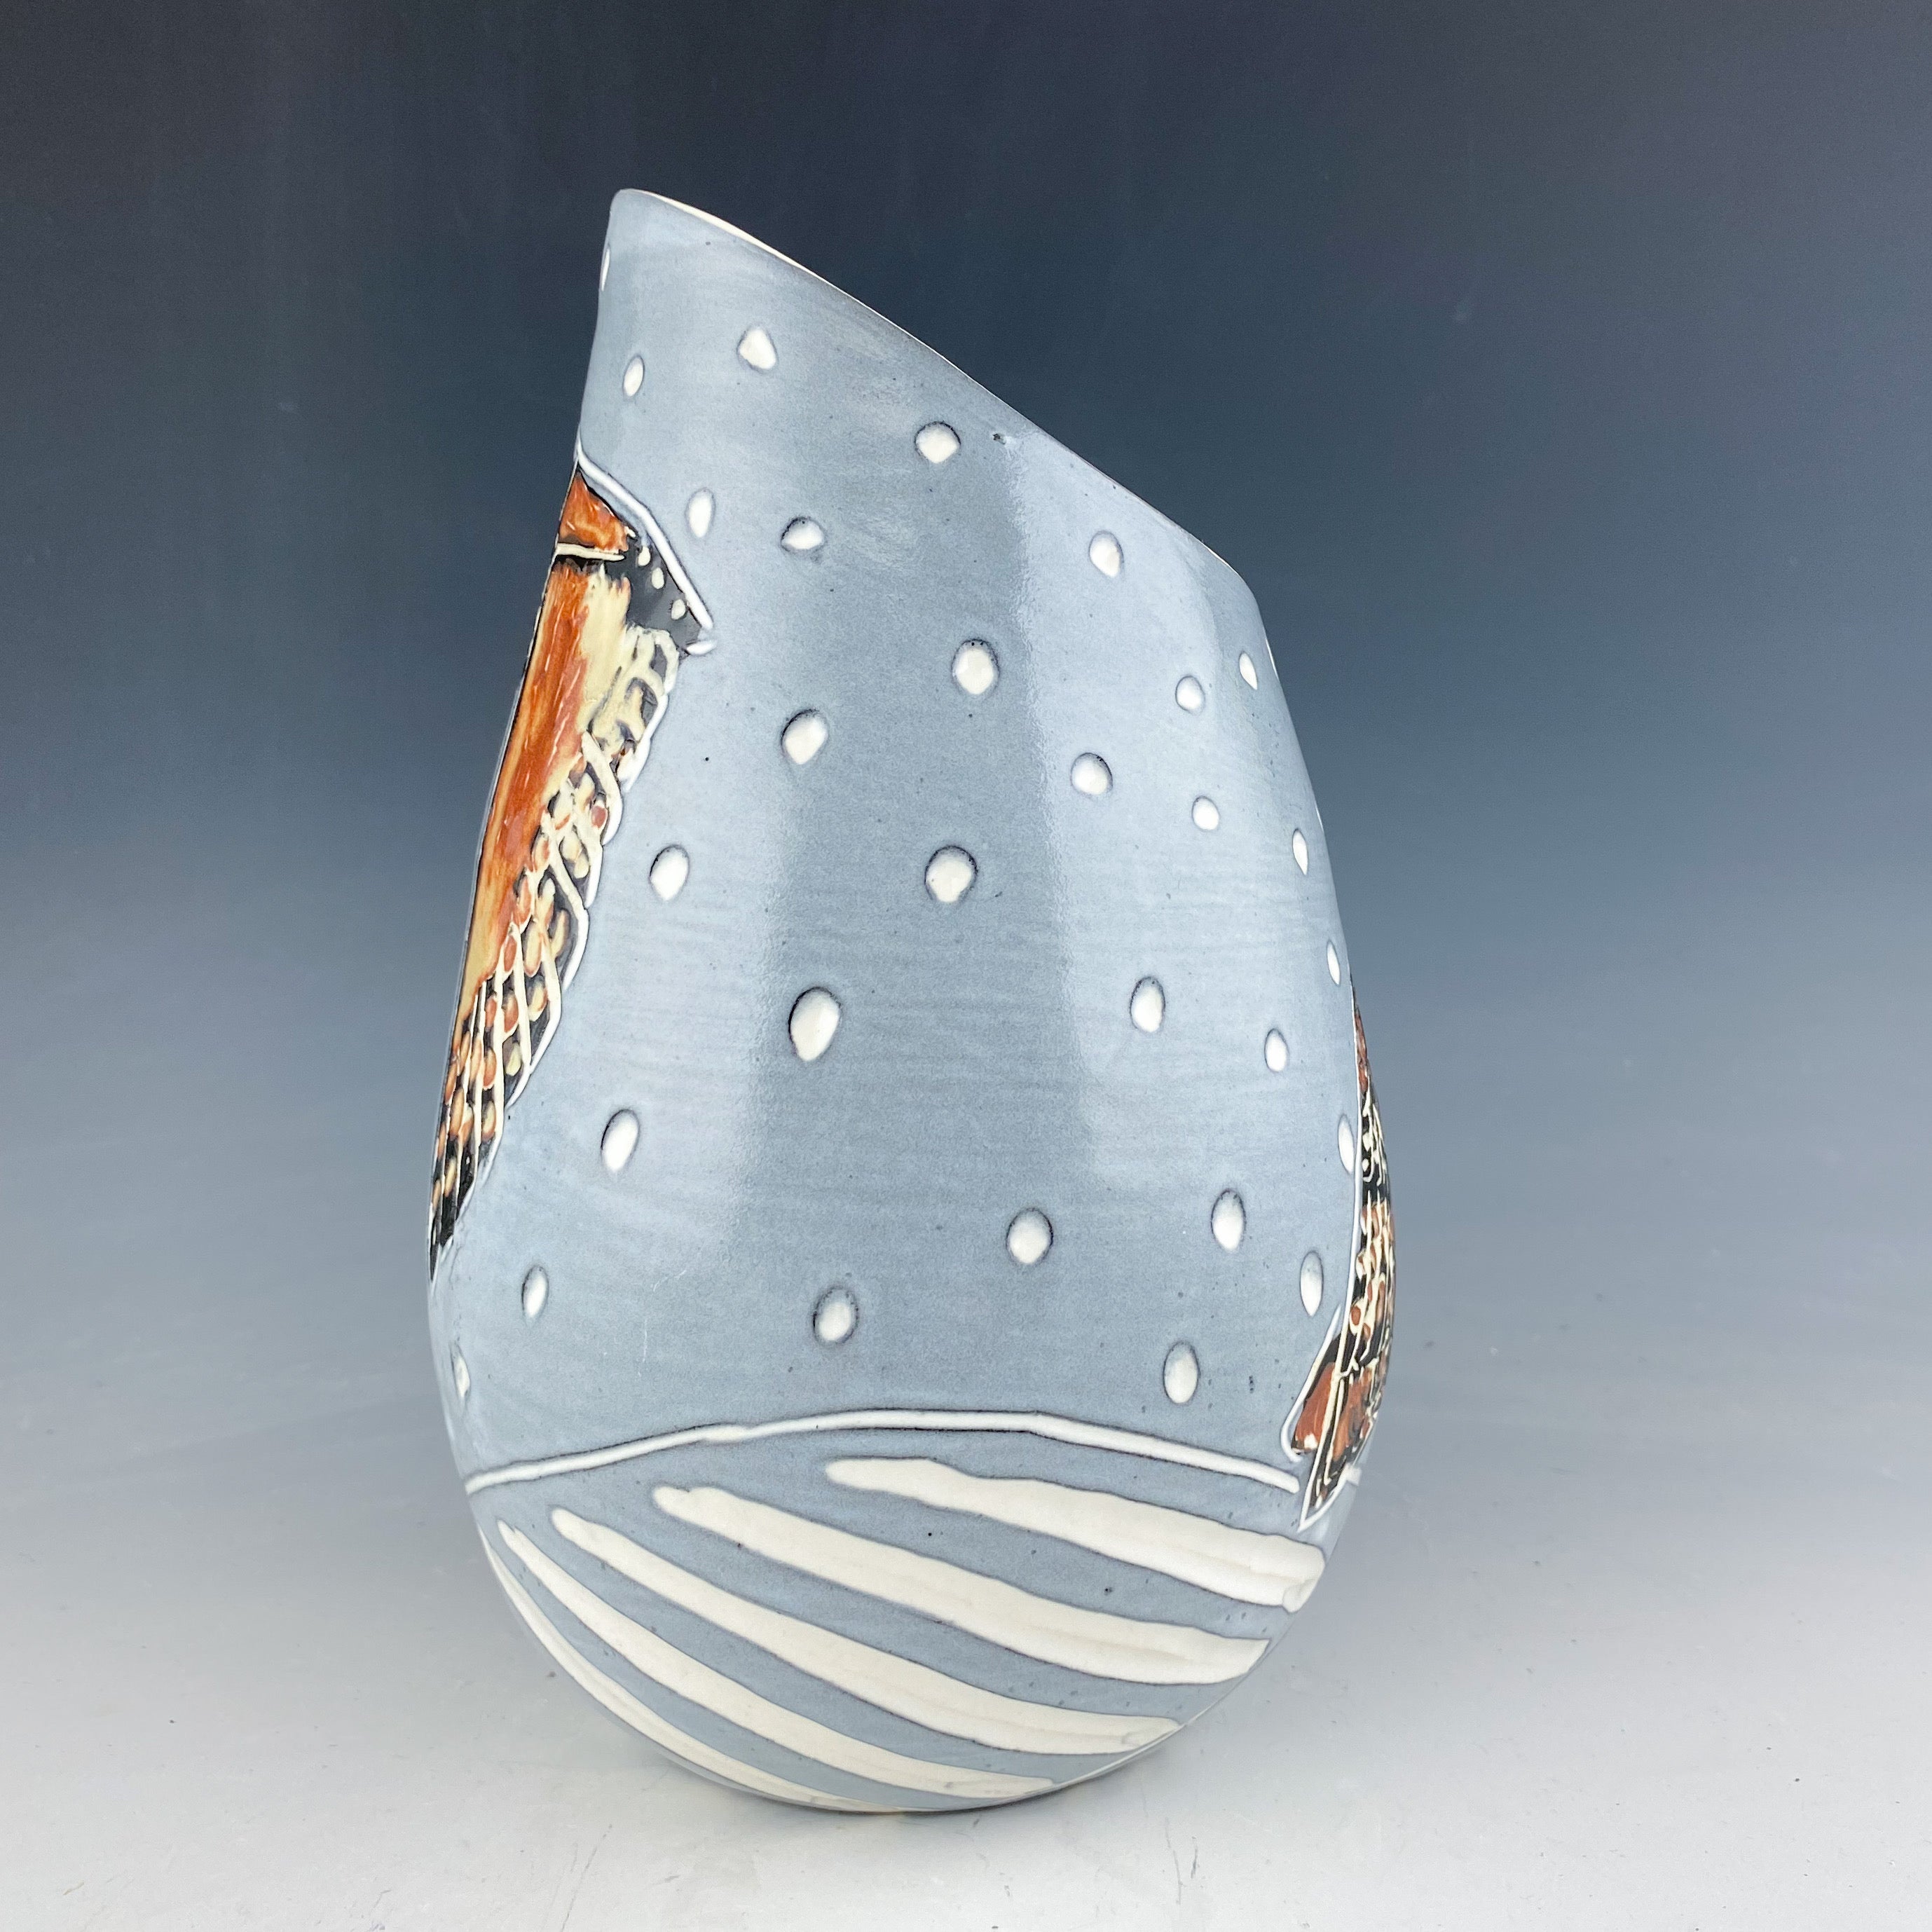 Owl Slanted Vase in White